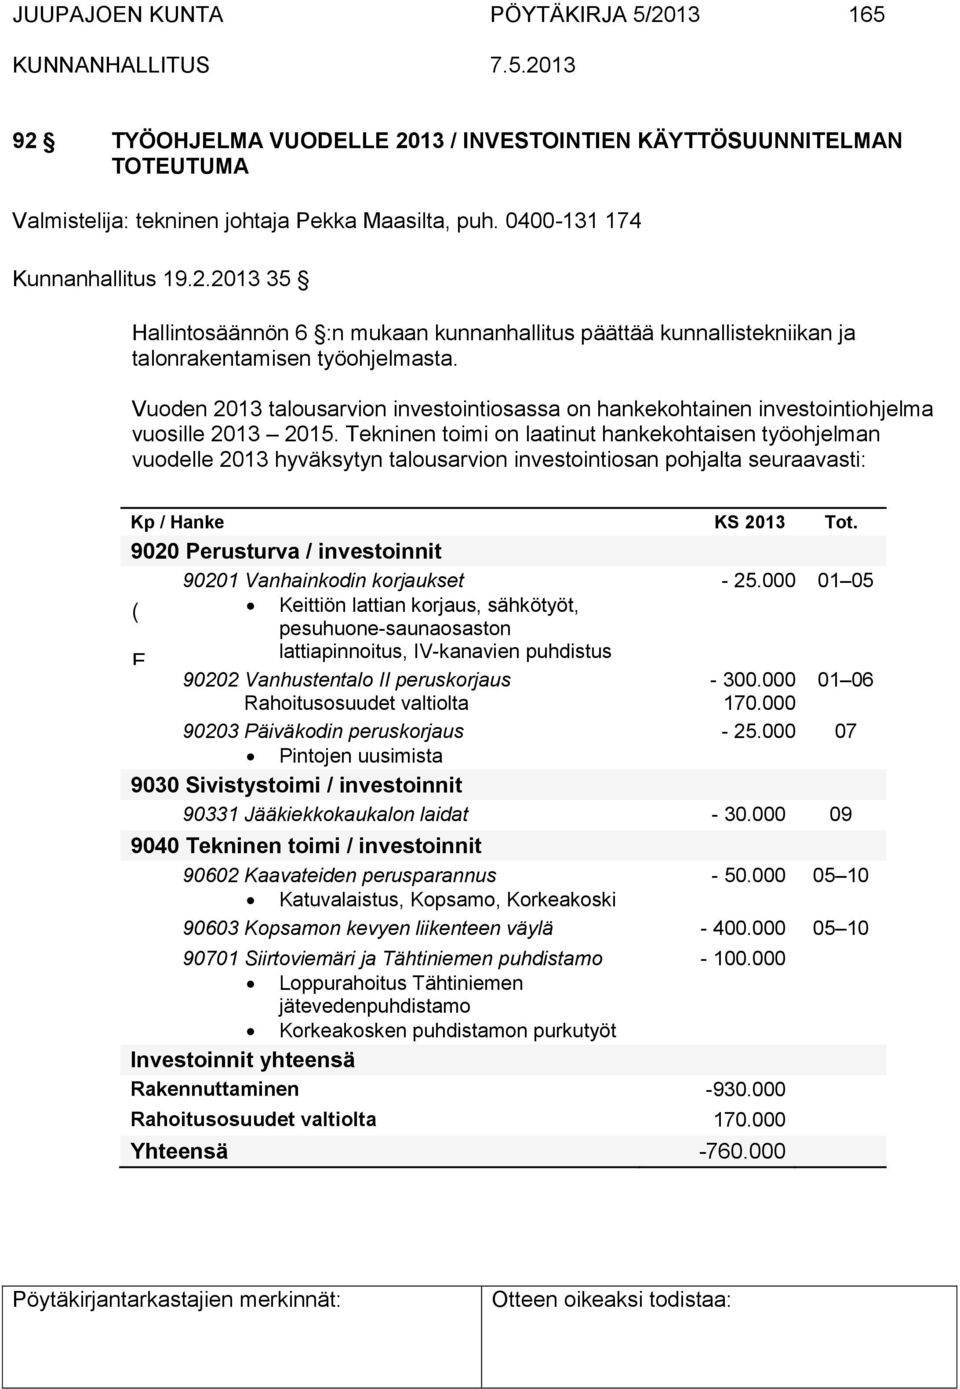 Tekninen toimi on laatinut hankekohtaisen työohjelman vuodelle 2013 hyväksytyn talousarvion investointiosan pohjalta seuraavasti: Kp / Hanke KS 2013 Tot.